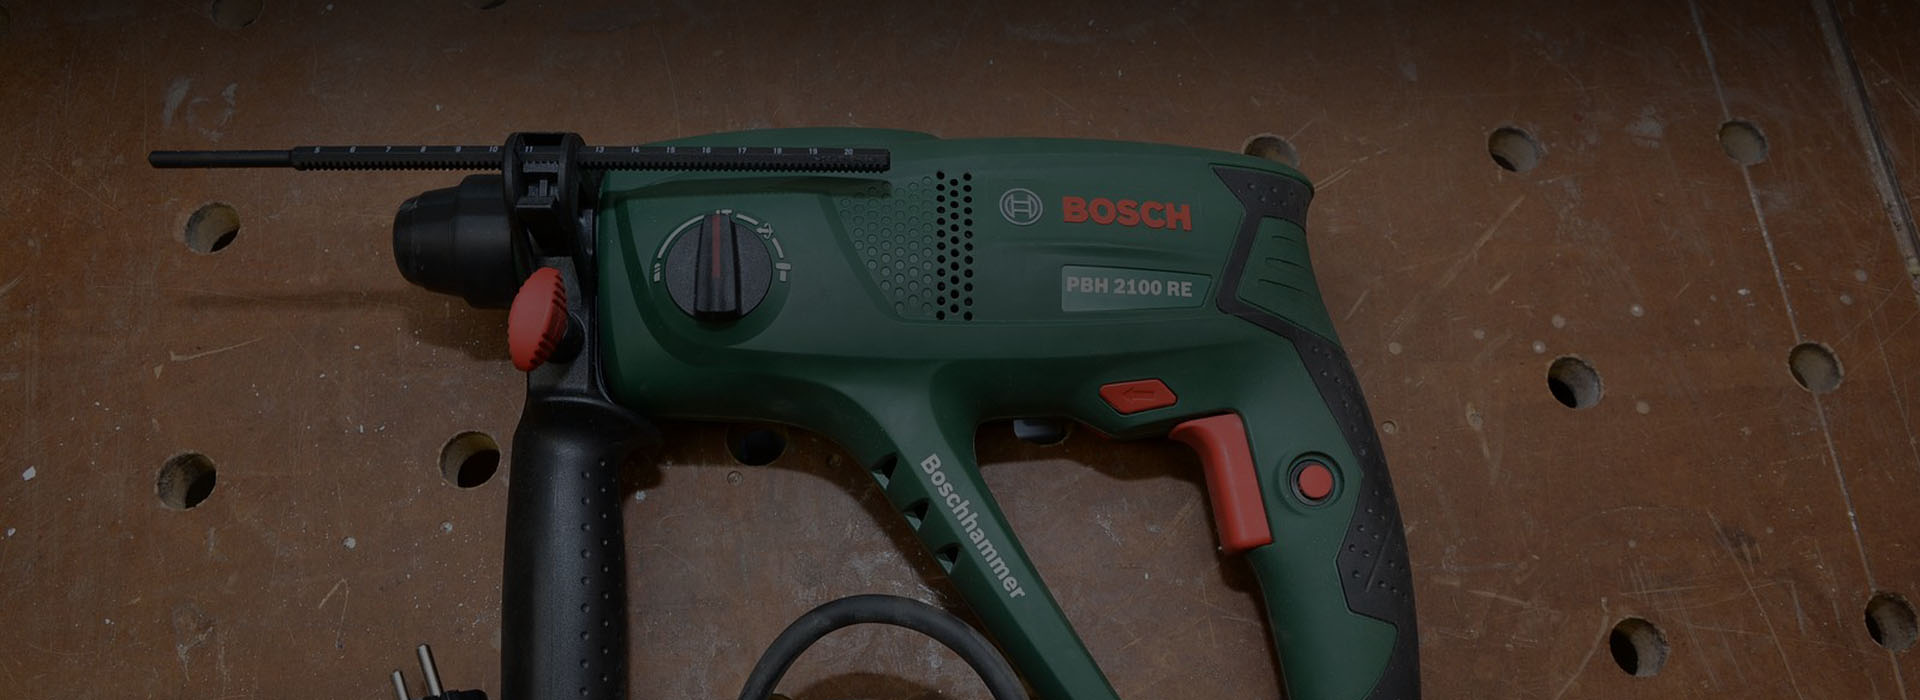 Bosch PBH 2100 RE Test • Leistung • Handhabung • Vor- & Nachteile